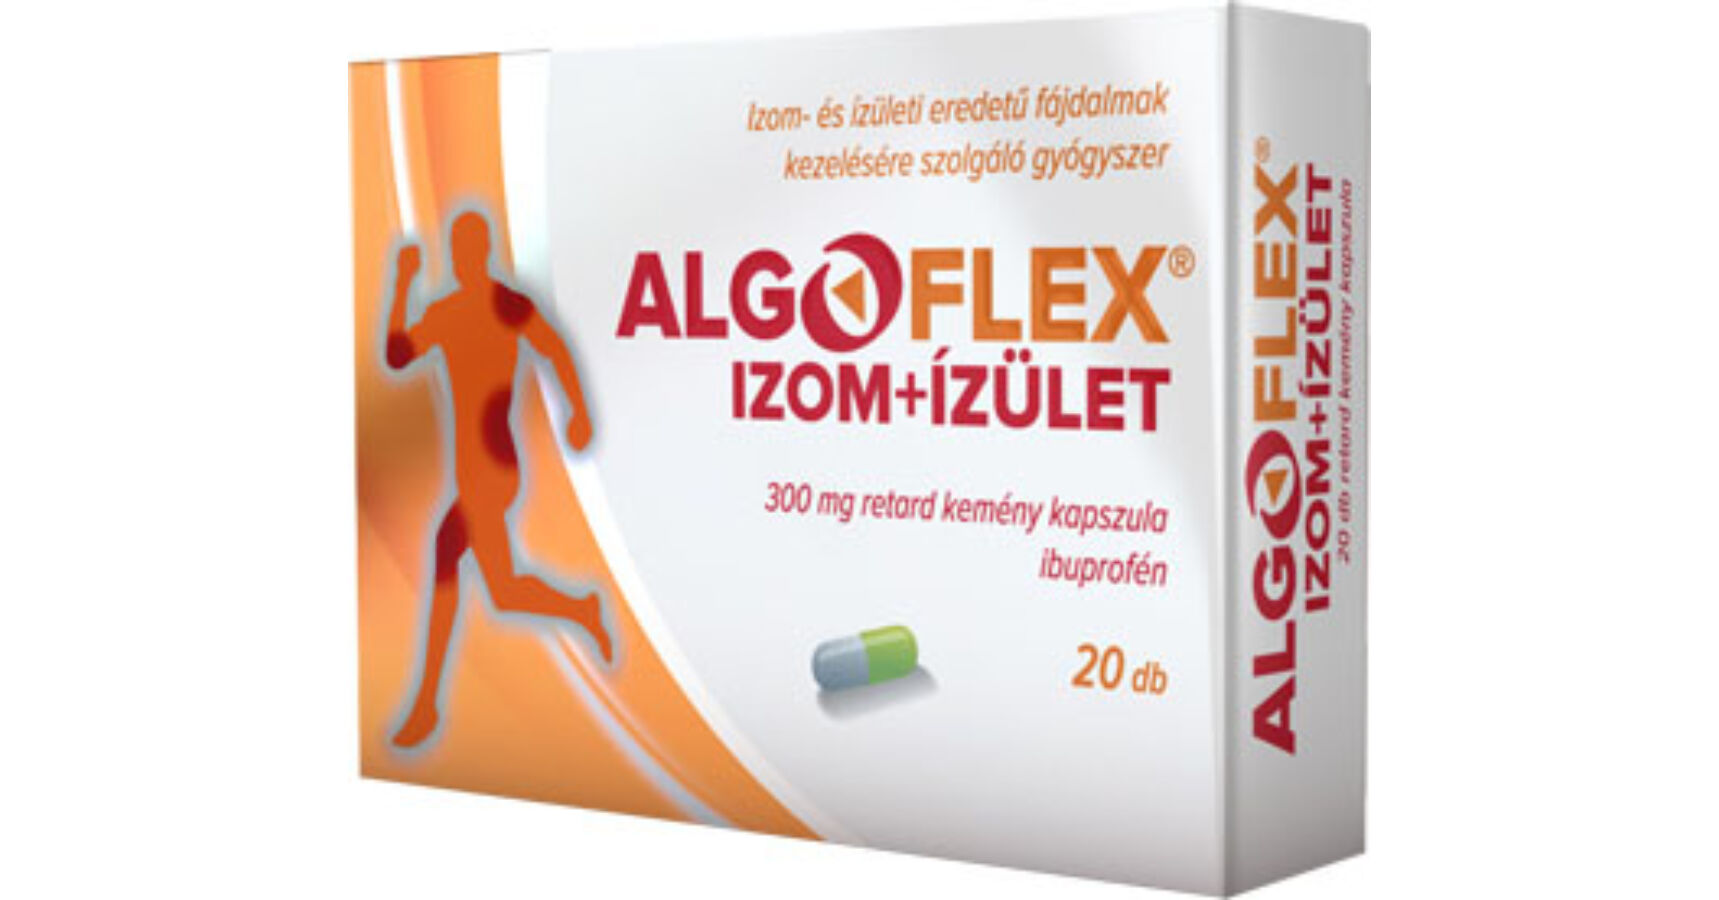 Algoflex Izom+Ízület mg retard kemény kapszula (20x)